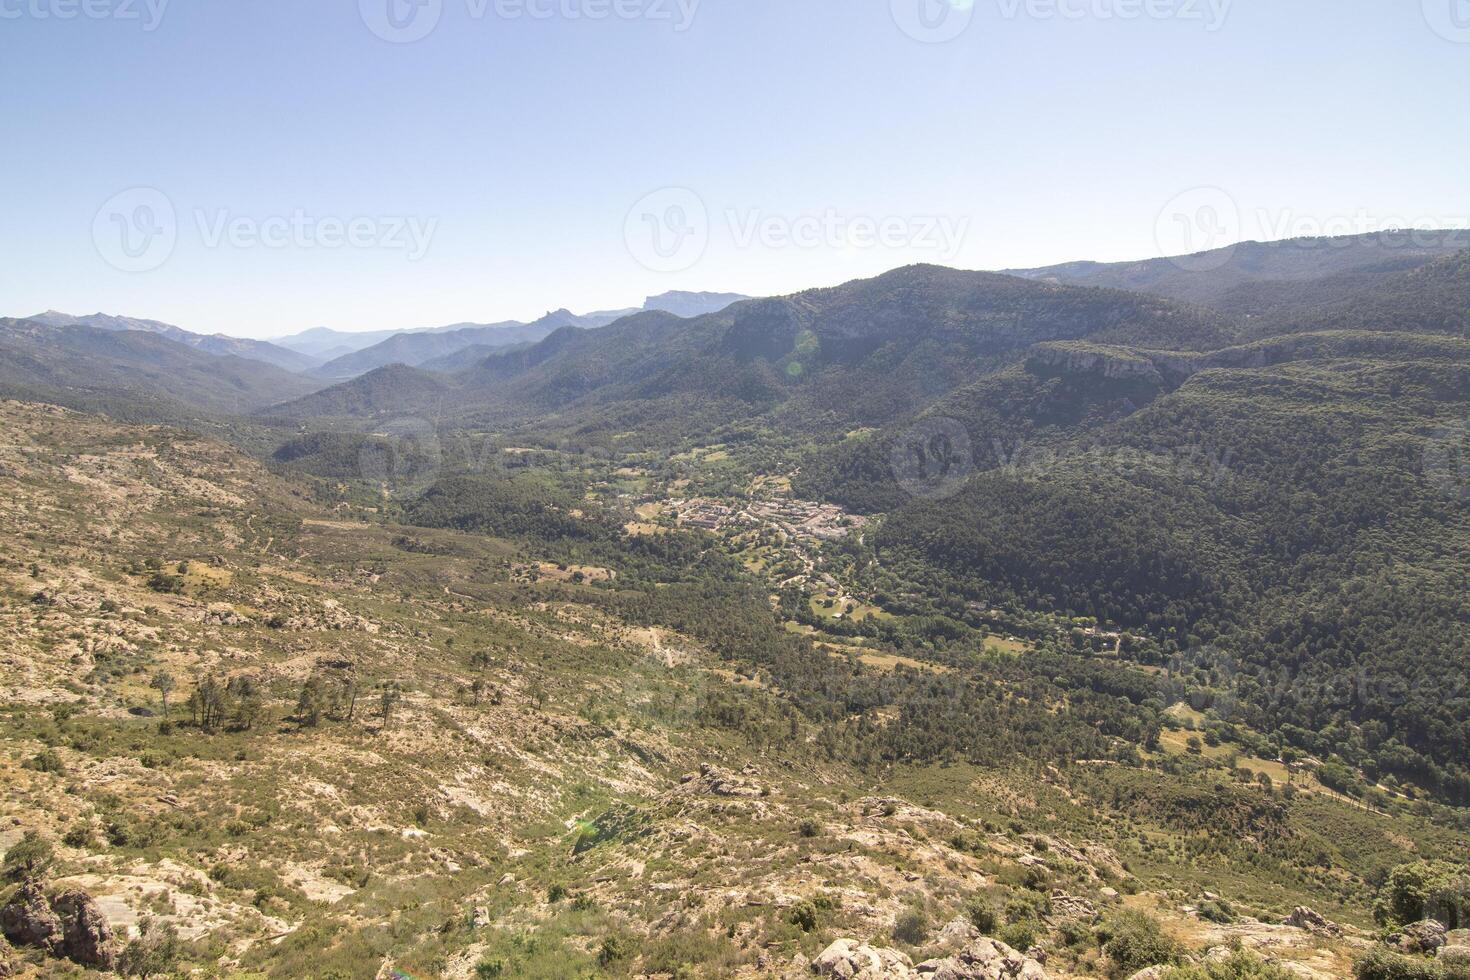 paisajes y caminos de el hermosa naturaleza de el sierra Delaware cazorla, jaén, España. naturaleza vacaciones concepto. foto